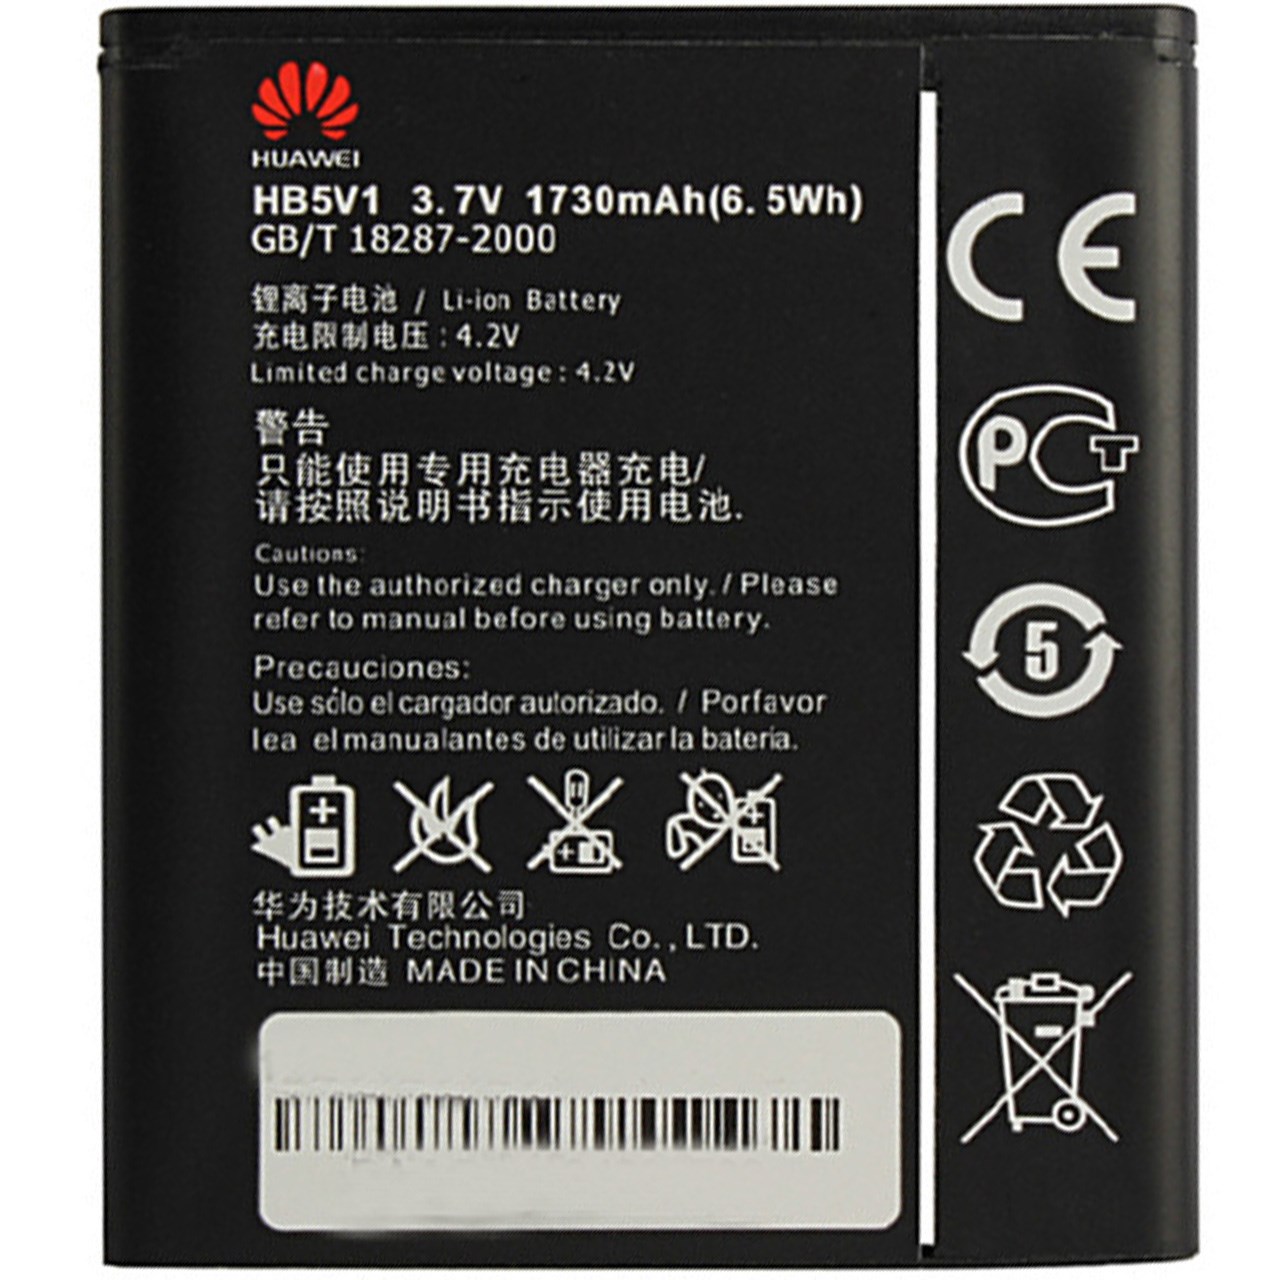 باتری موبایل مدل HB5V1 با ظرفیت 1730mAh مناسب برای گوشی موبایل هوآوی Ascend G600